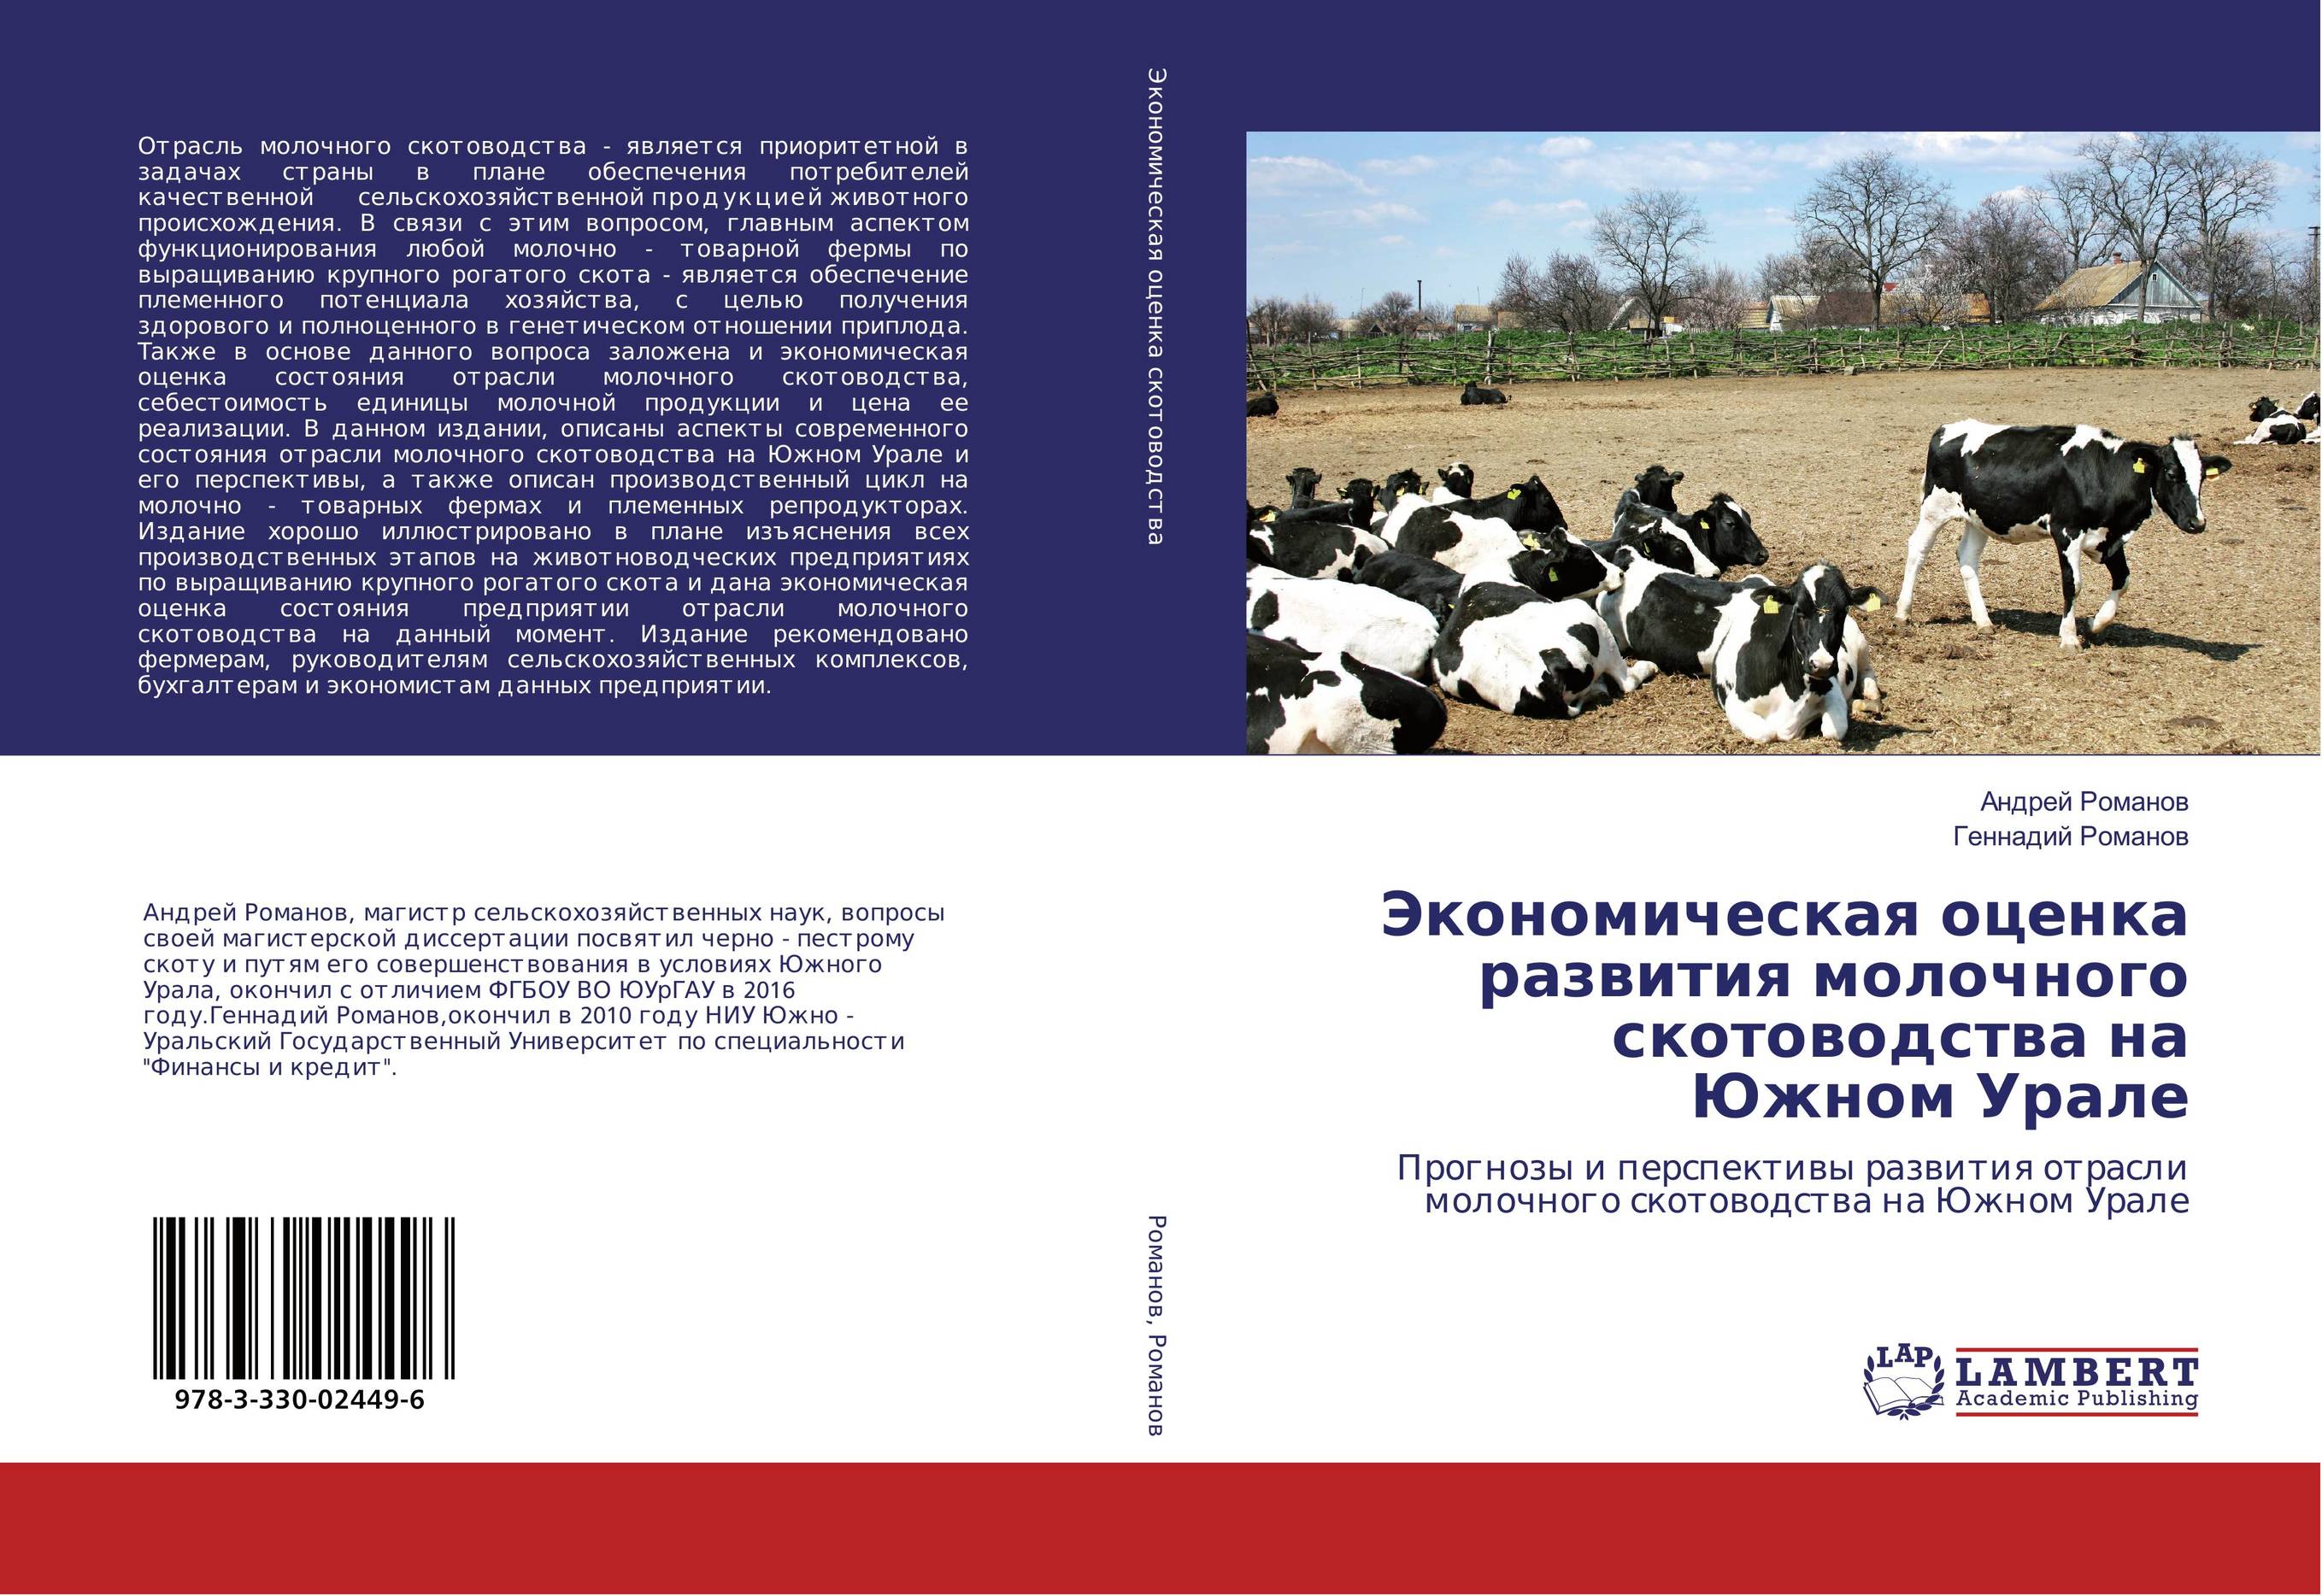 
        Экономическая оценка развития молочного скотоводства на Южном Урале. Прогнозы и перспективы развития отрасли молочного скотоводства на Южном Урале.
      